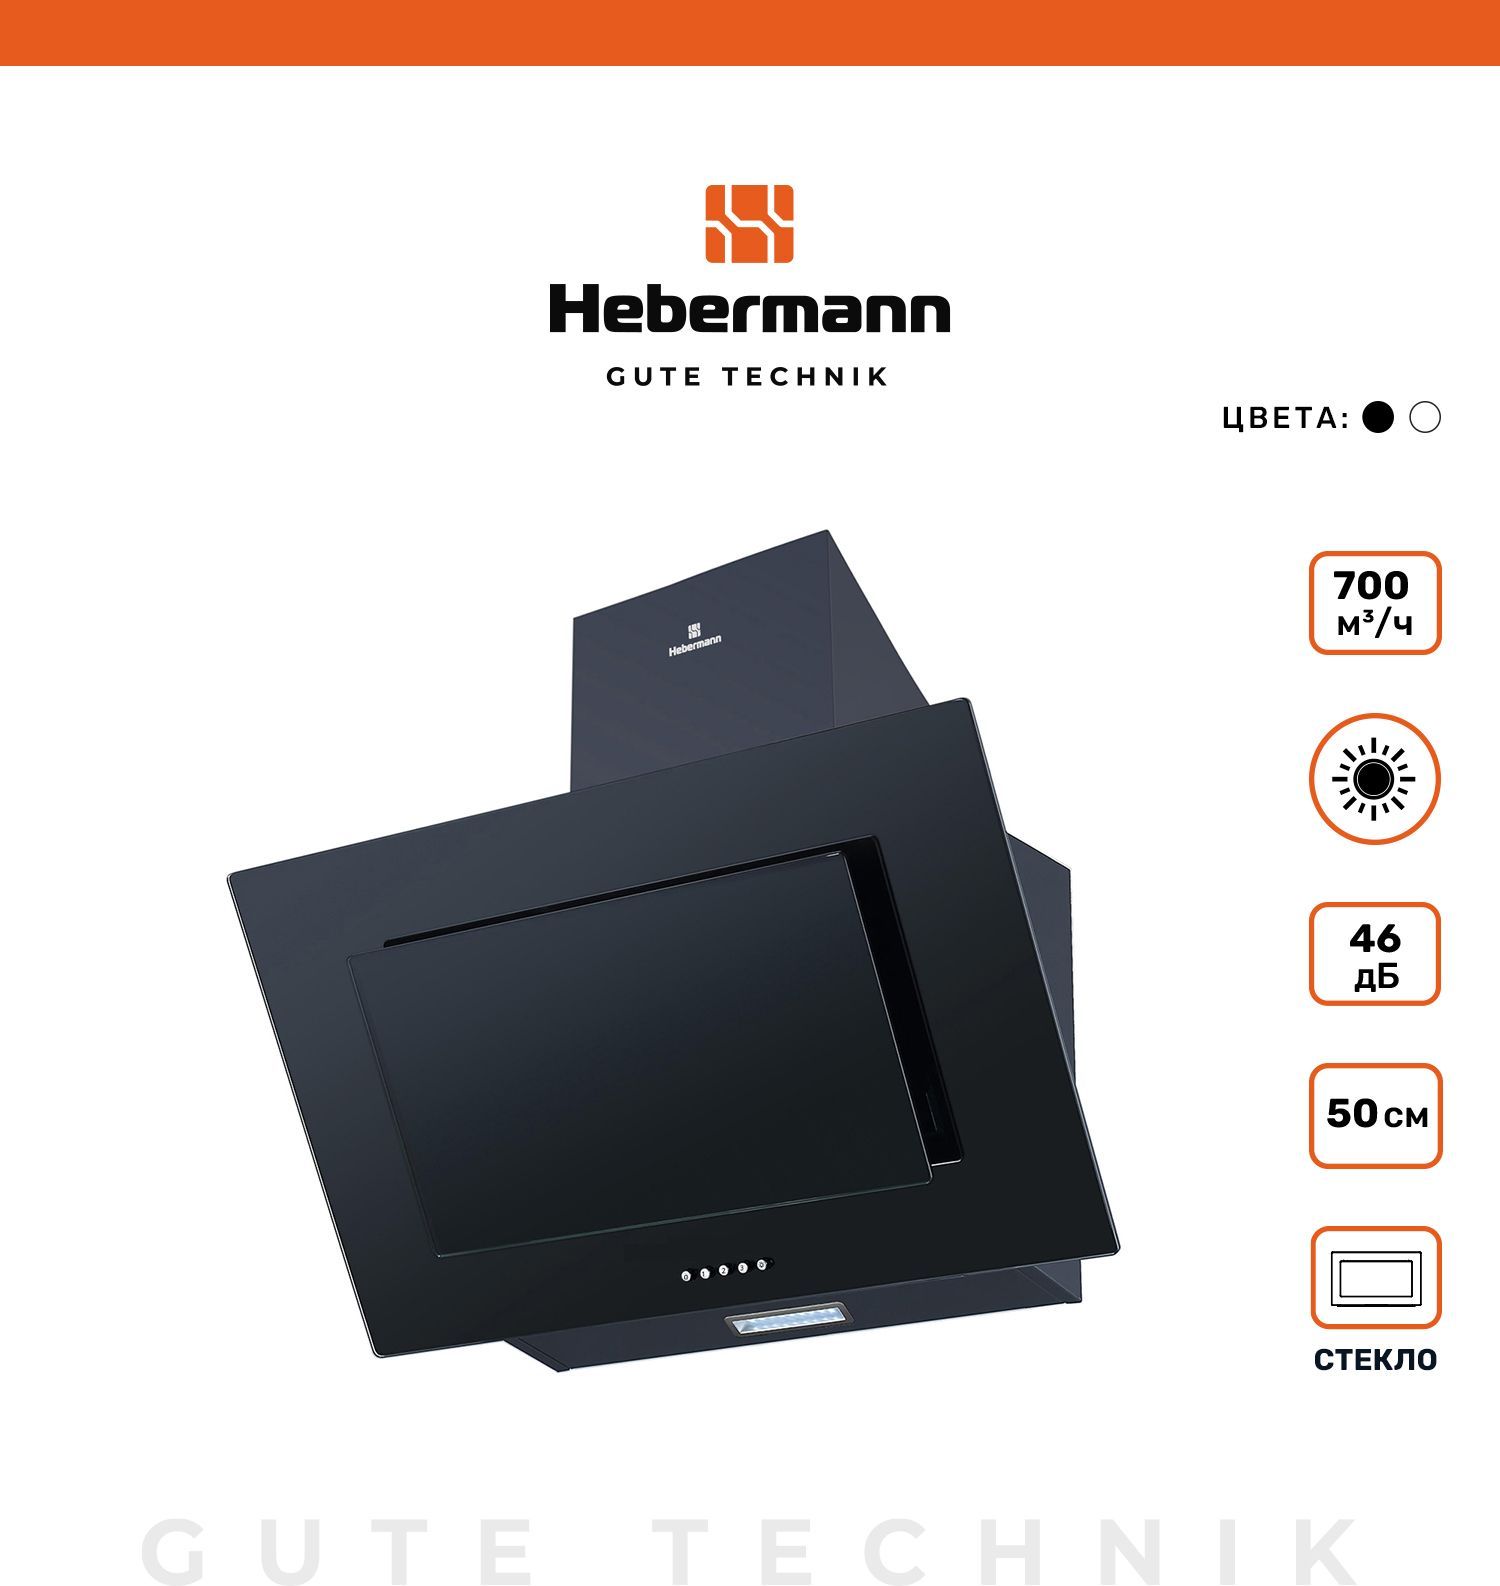 Вытяжки hebermann. Наклонная кухонная вытяжка Hebermann HBKH 60.5 B стекло мощность кв. Hebermann HBKH 50.4 W. Habermann HBKH 50.2 W. Наклонная кухонная вытяжка Hebermann HBKH 60.5 B стекло какой мощности.